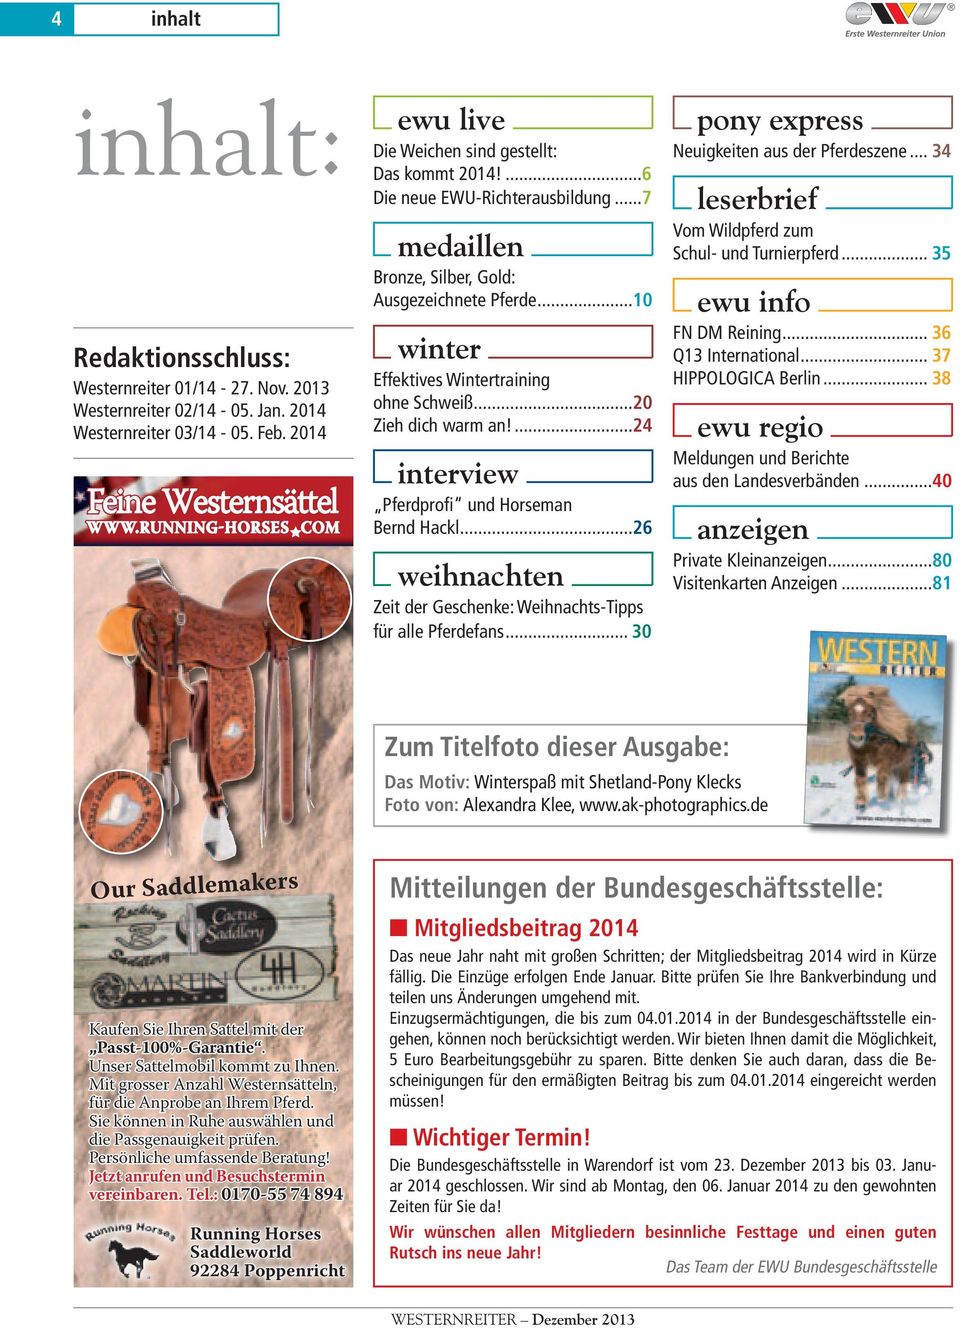 ...24 interview Pferdprofi und Horseman Bernd Hackl...26 weihnachten Zeit der Geschenke: Weihnachts-Tipps für alle Pferdefans... 30 pony express Neuigkeiten aus der Pferdeszene.